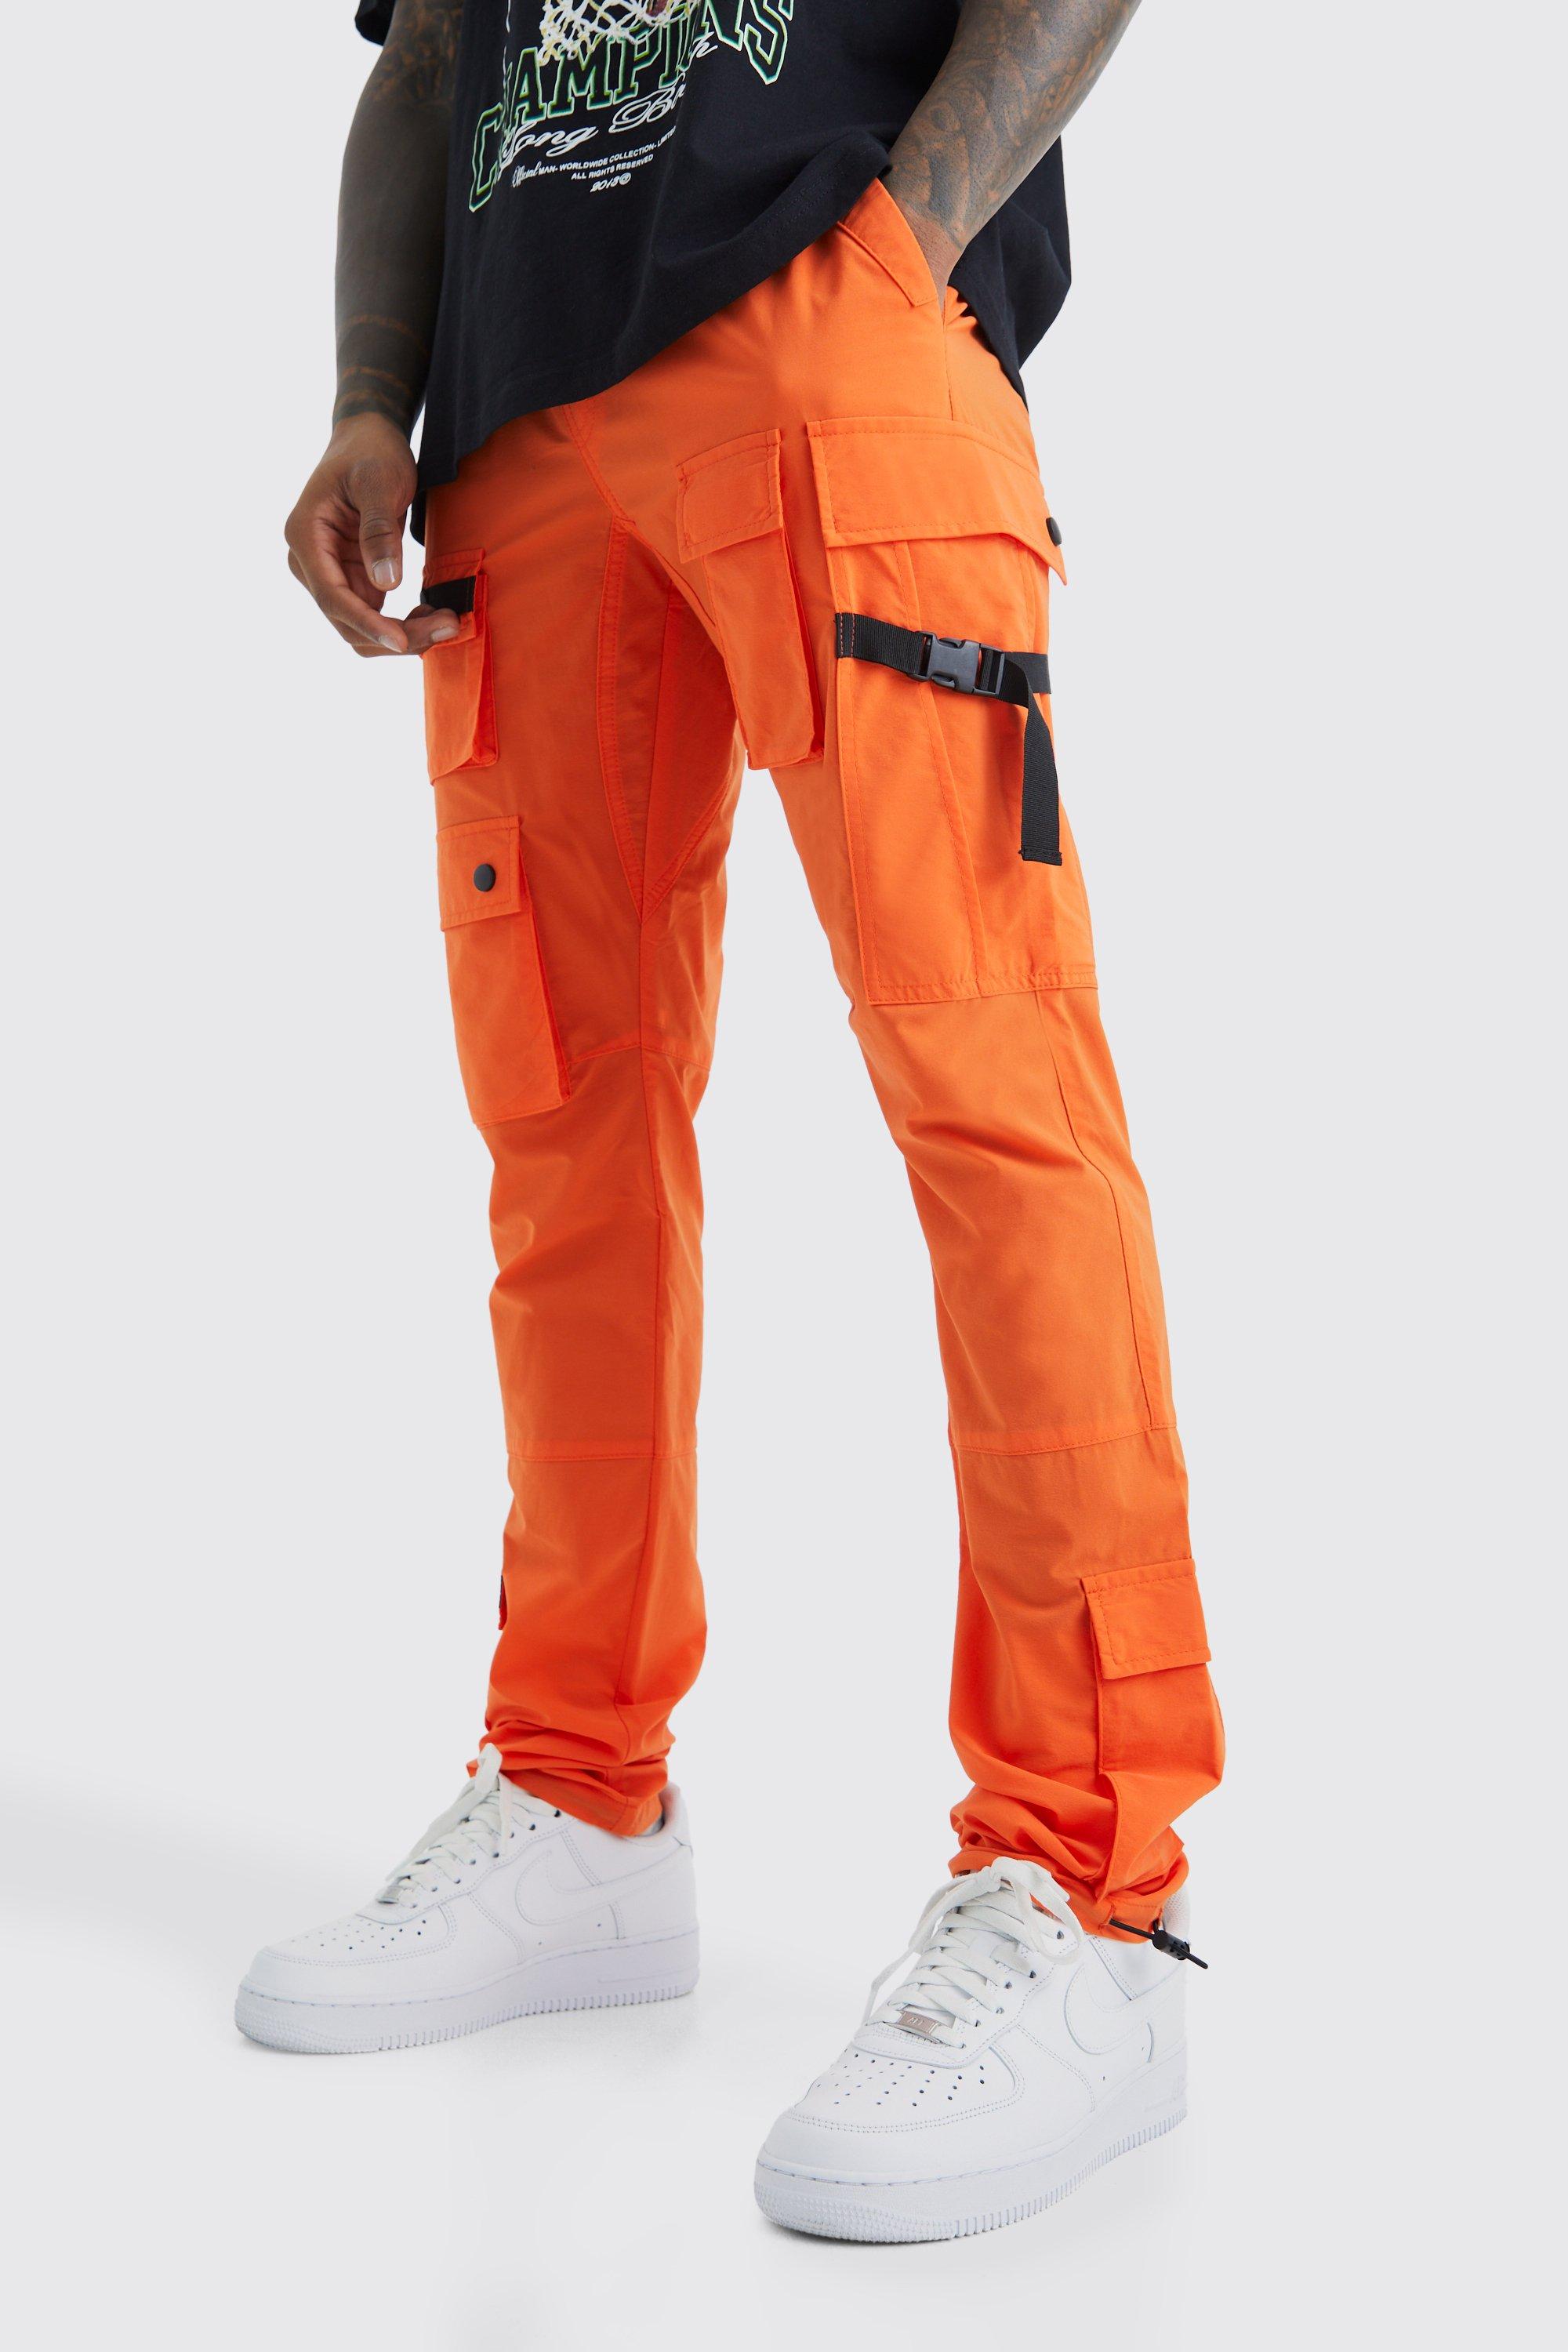 pantalon cargo ajusté à taille élastique homme - orange - xxl, orange